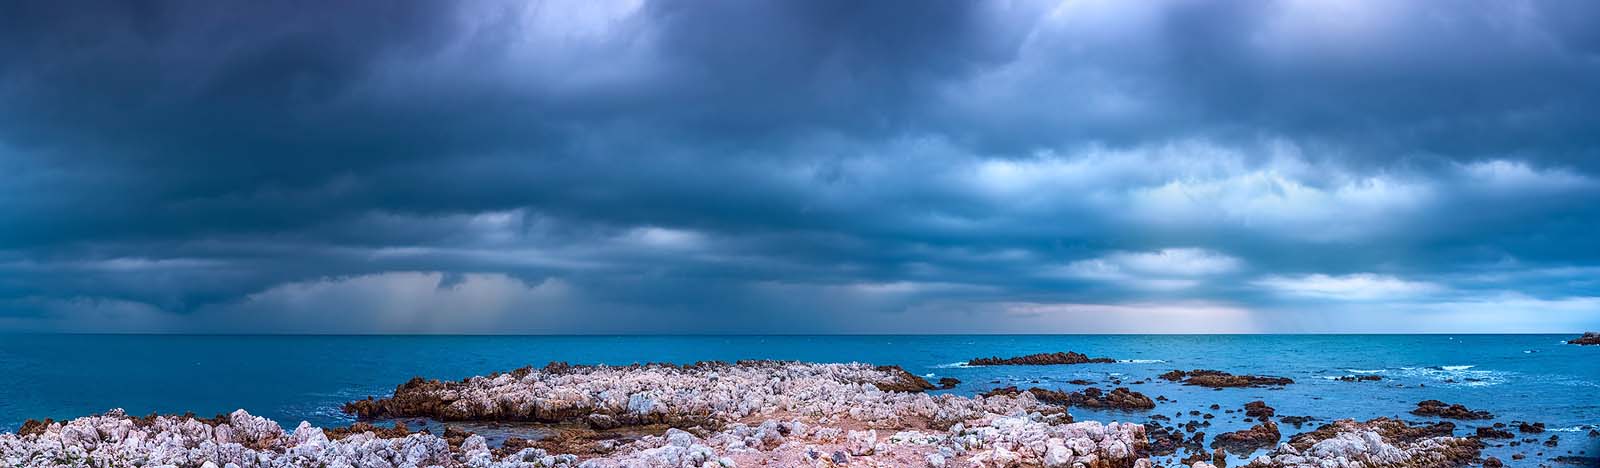 Cap d'Antibes, Cote d'Azur: Vor dem Sturm. Einzeiliges Panorama, zusammengesetzt aus 9 Aufnahmen. Originalgröße 270x80cm | © Reinhard Podolsky